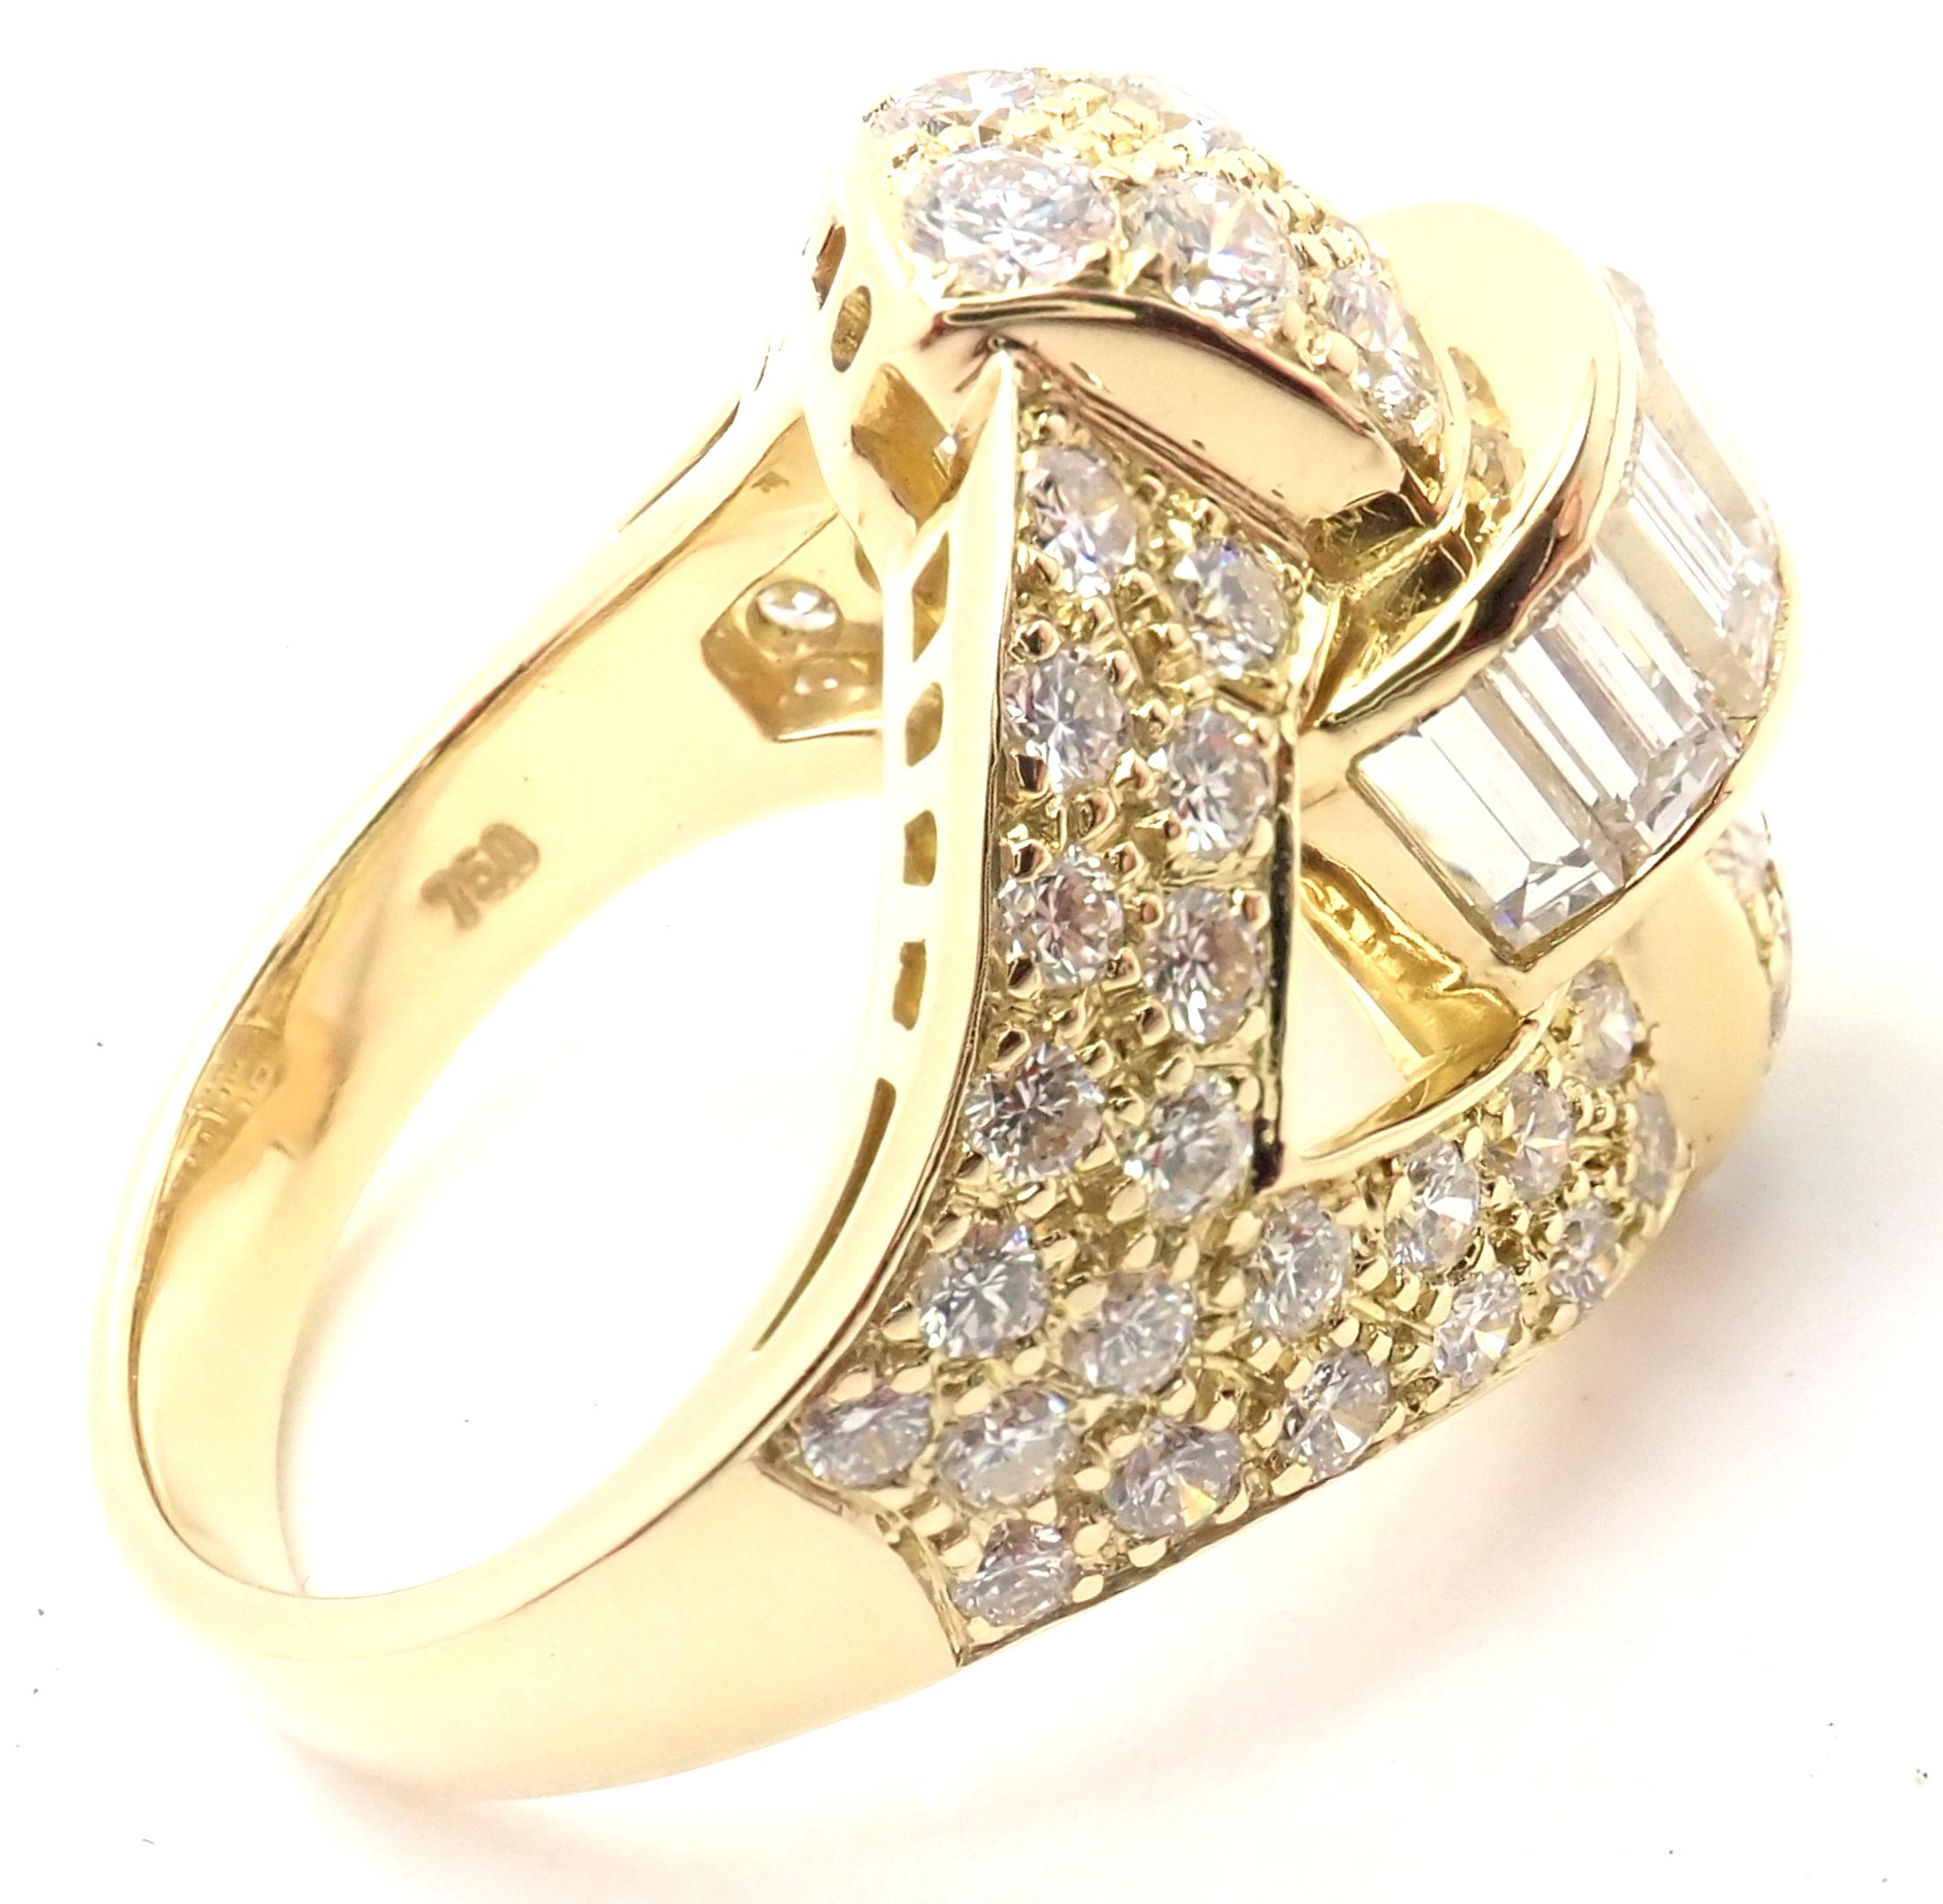 bague cocktail en or jaune 18 carats avec diamants, signée Piaget. 
Avec 56 diamants ronds brillants et taillés en marque VS1 de clarté, couleur G et 7 diamants taillés en émeraude d'un poids total d'environ 3 ct
Détails : 
Taille : 5.5
Largeur :